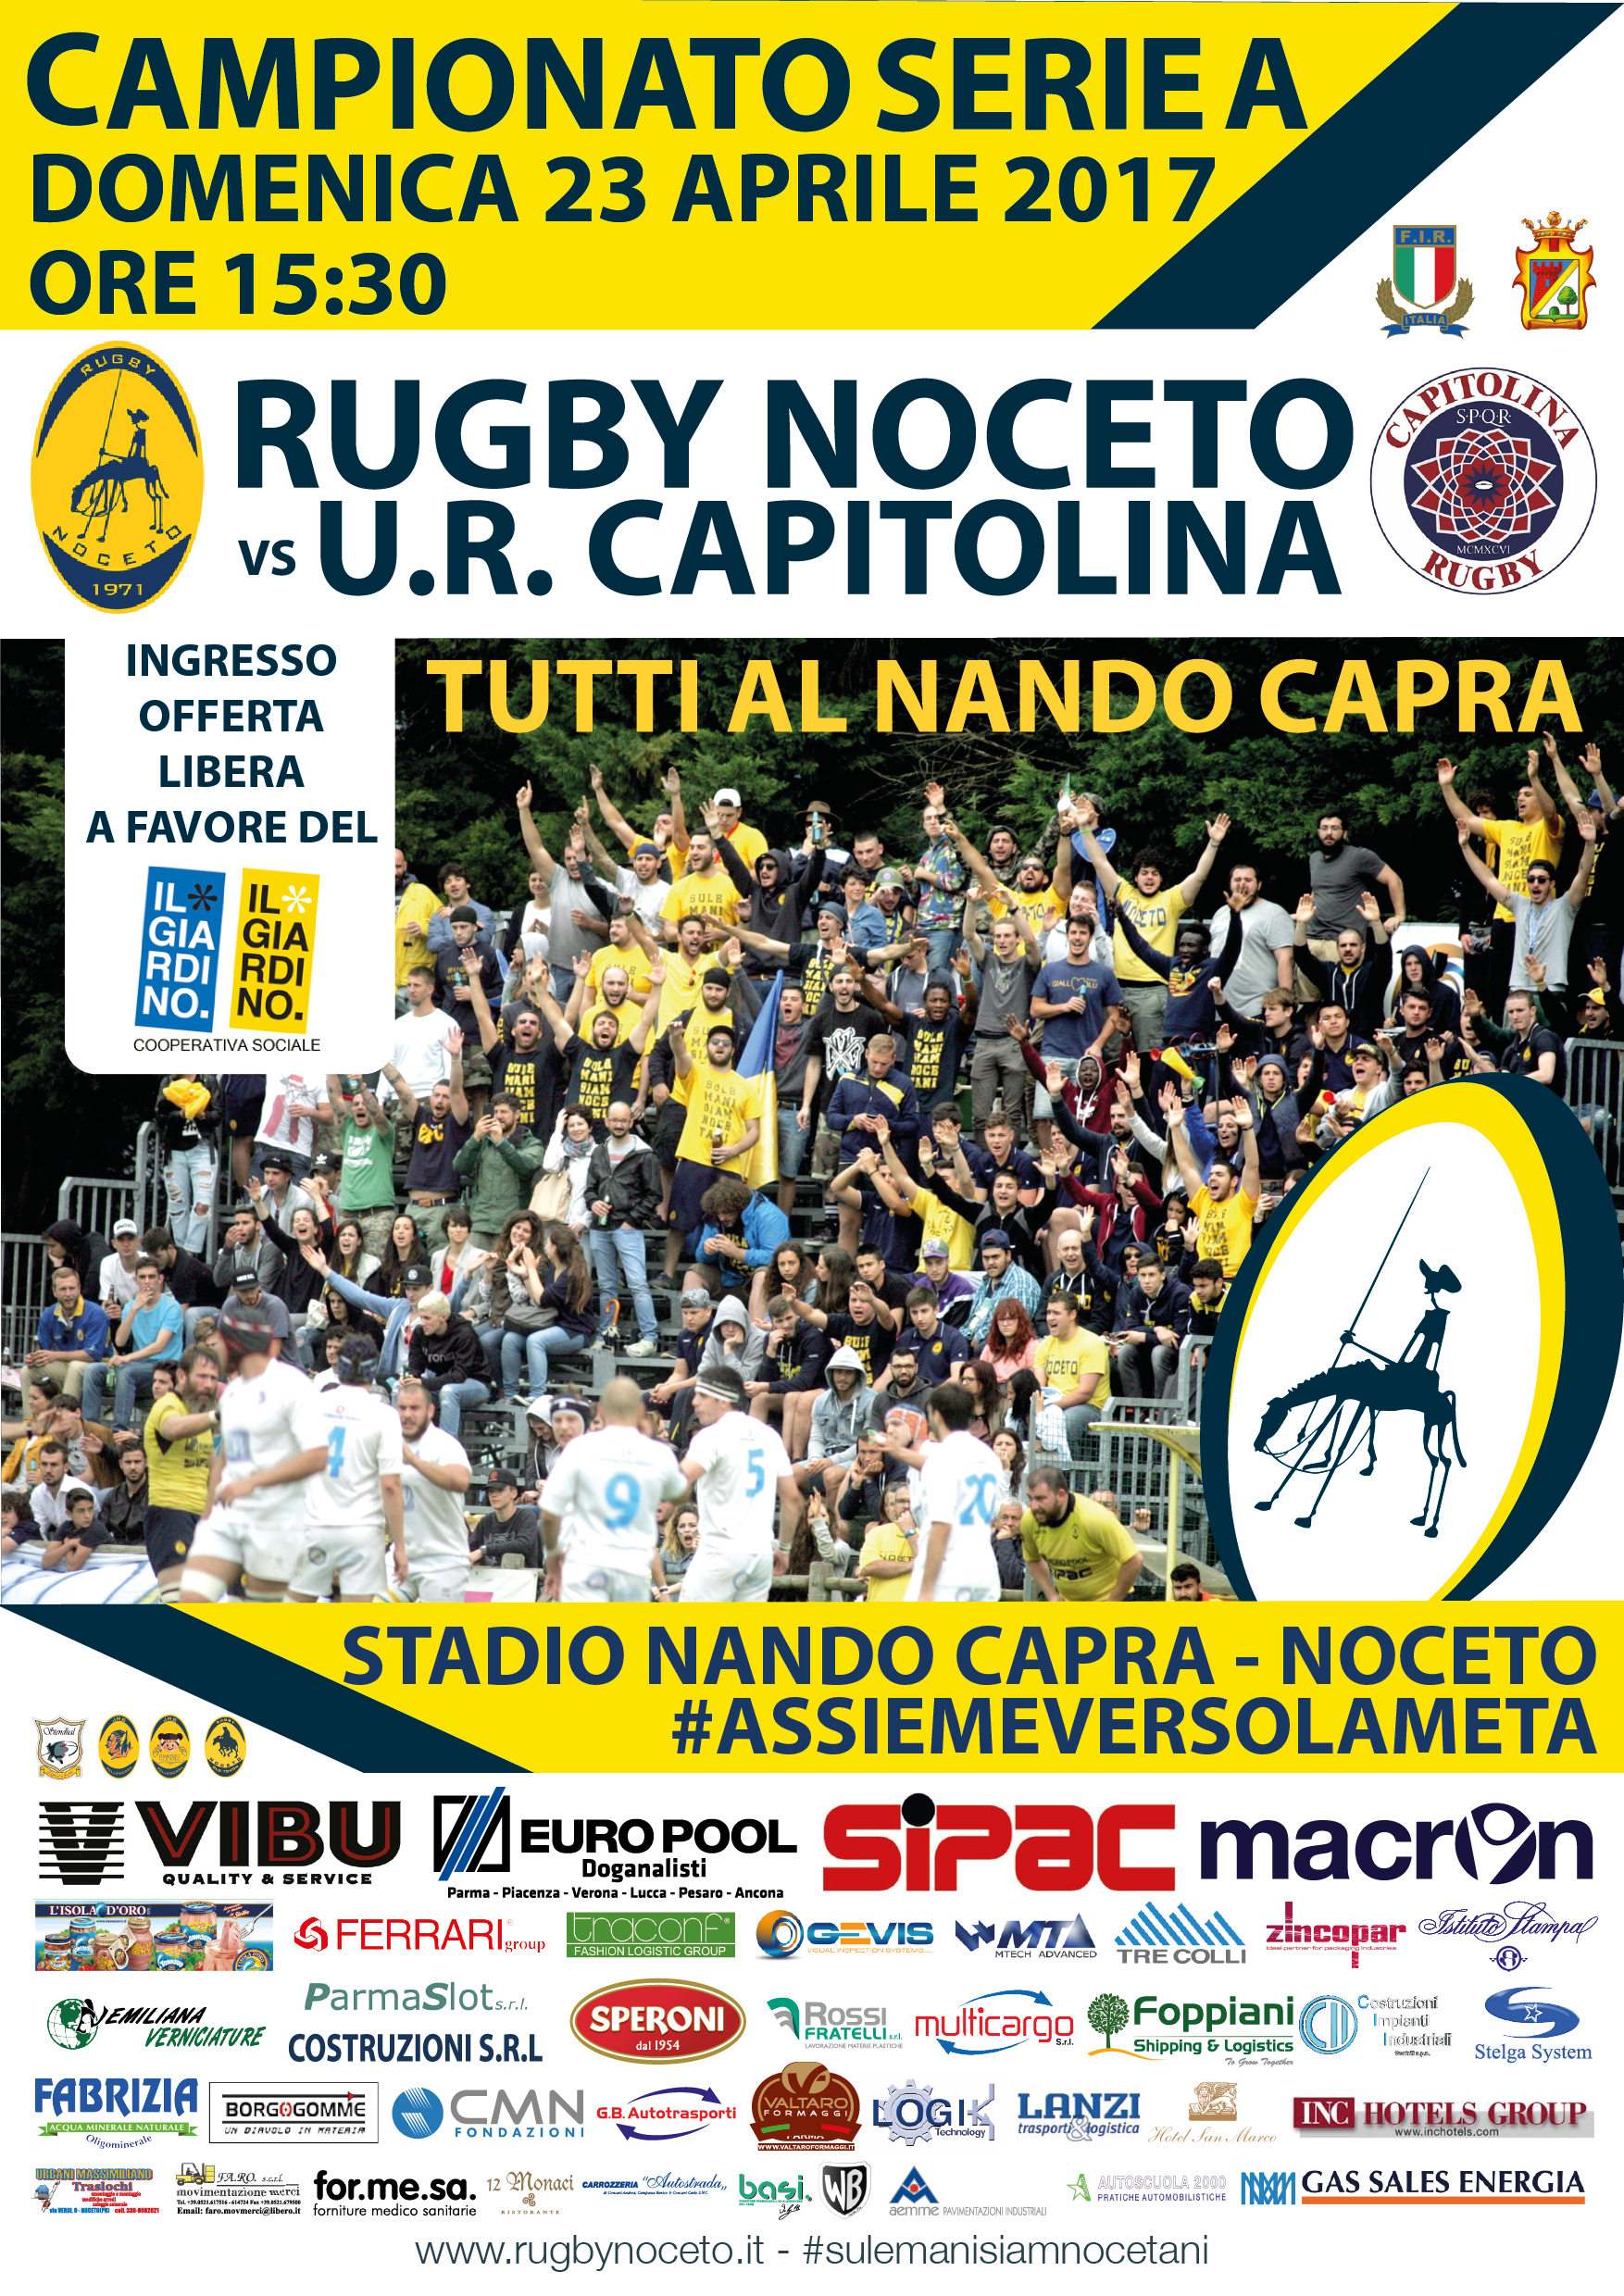 SerieA: Rugby Noceto a favore de Il Giardino